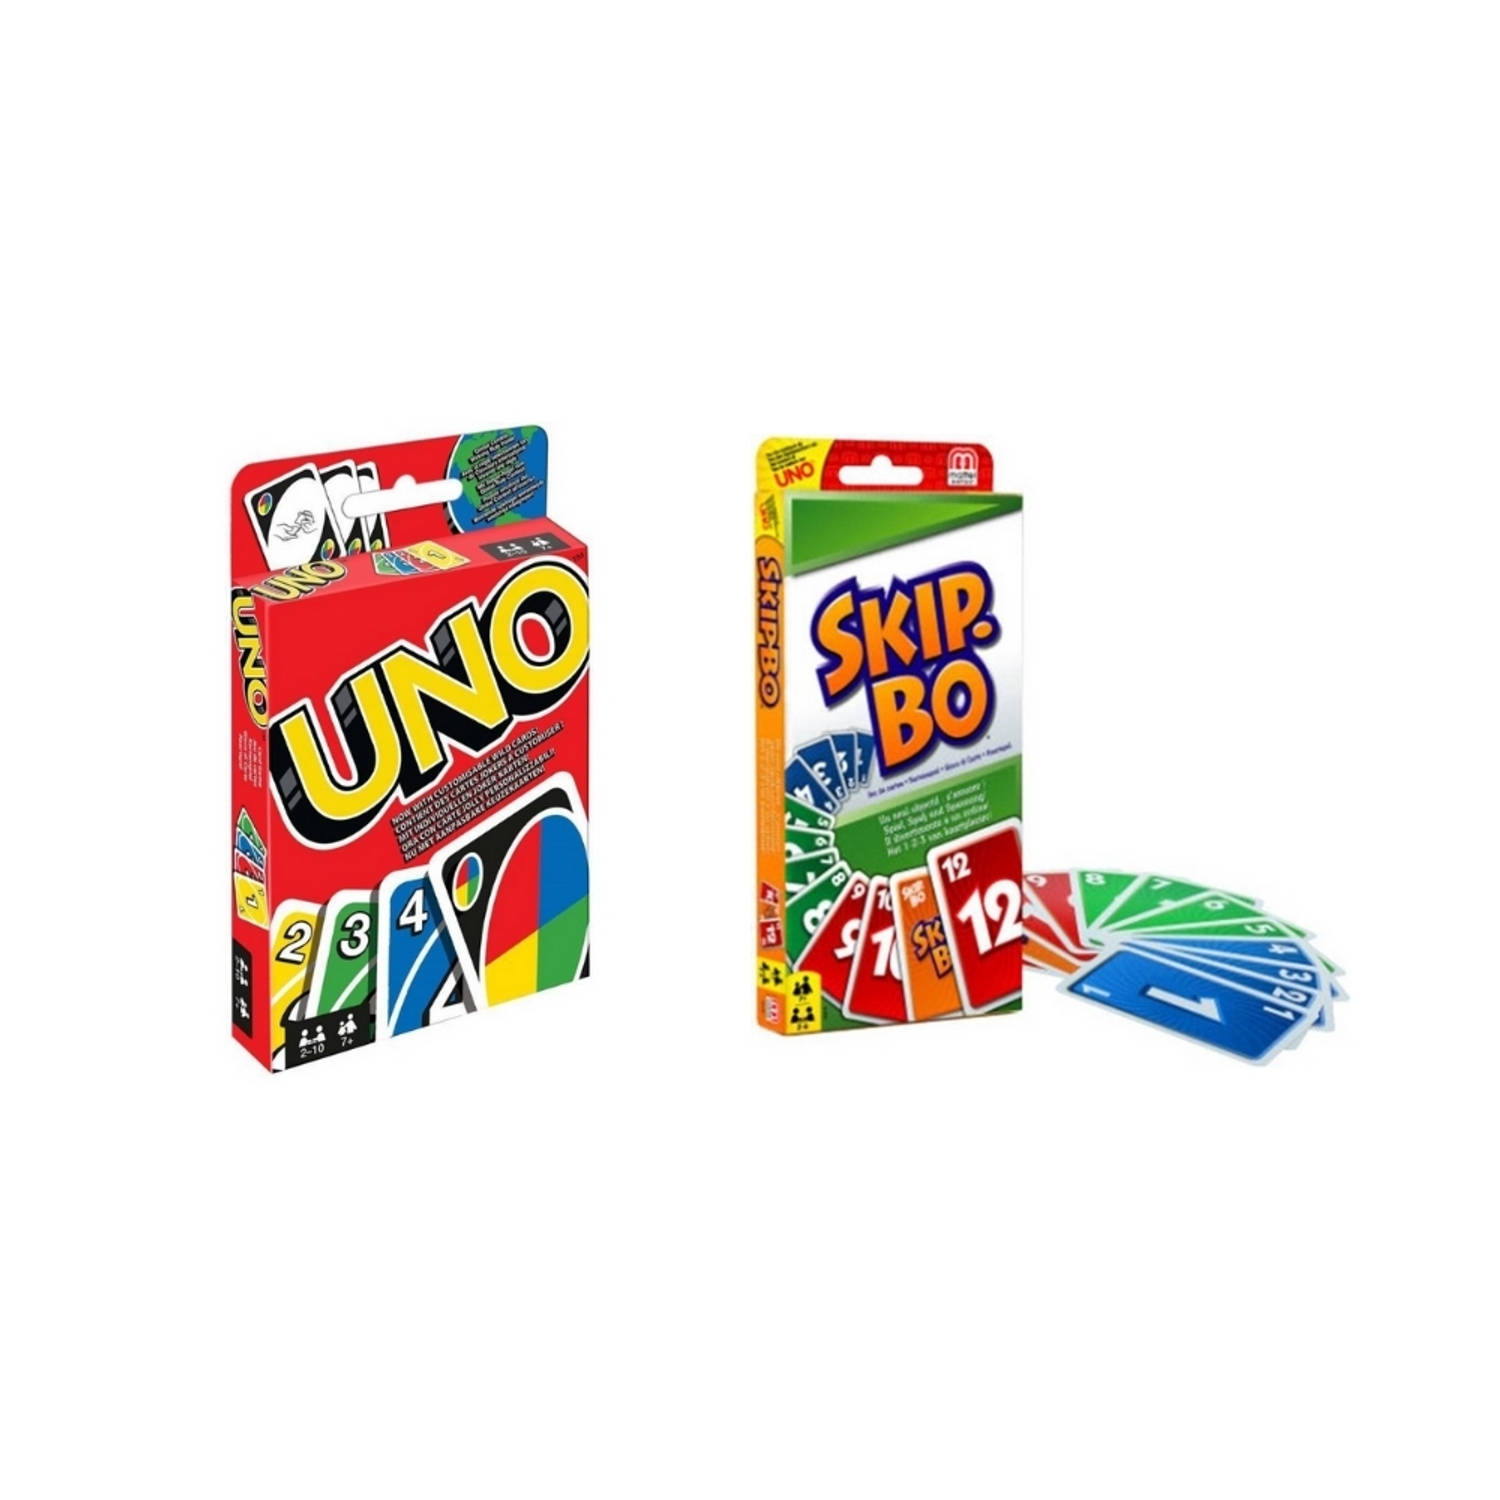 Spellenbundel 2 Stuks Uno & Skip-bo